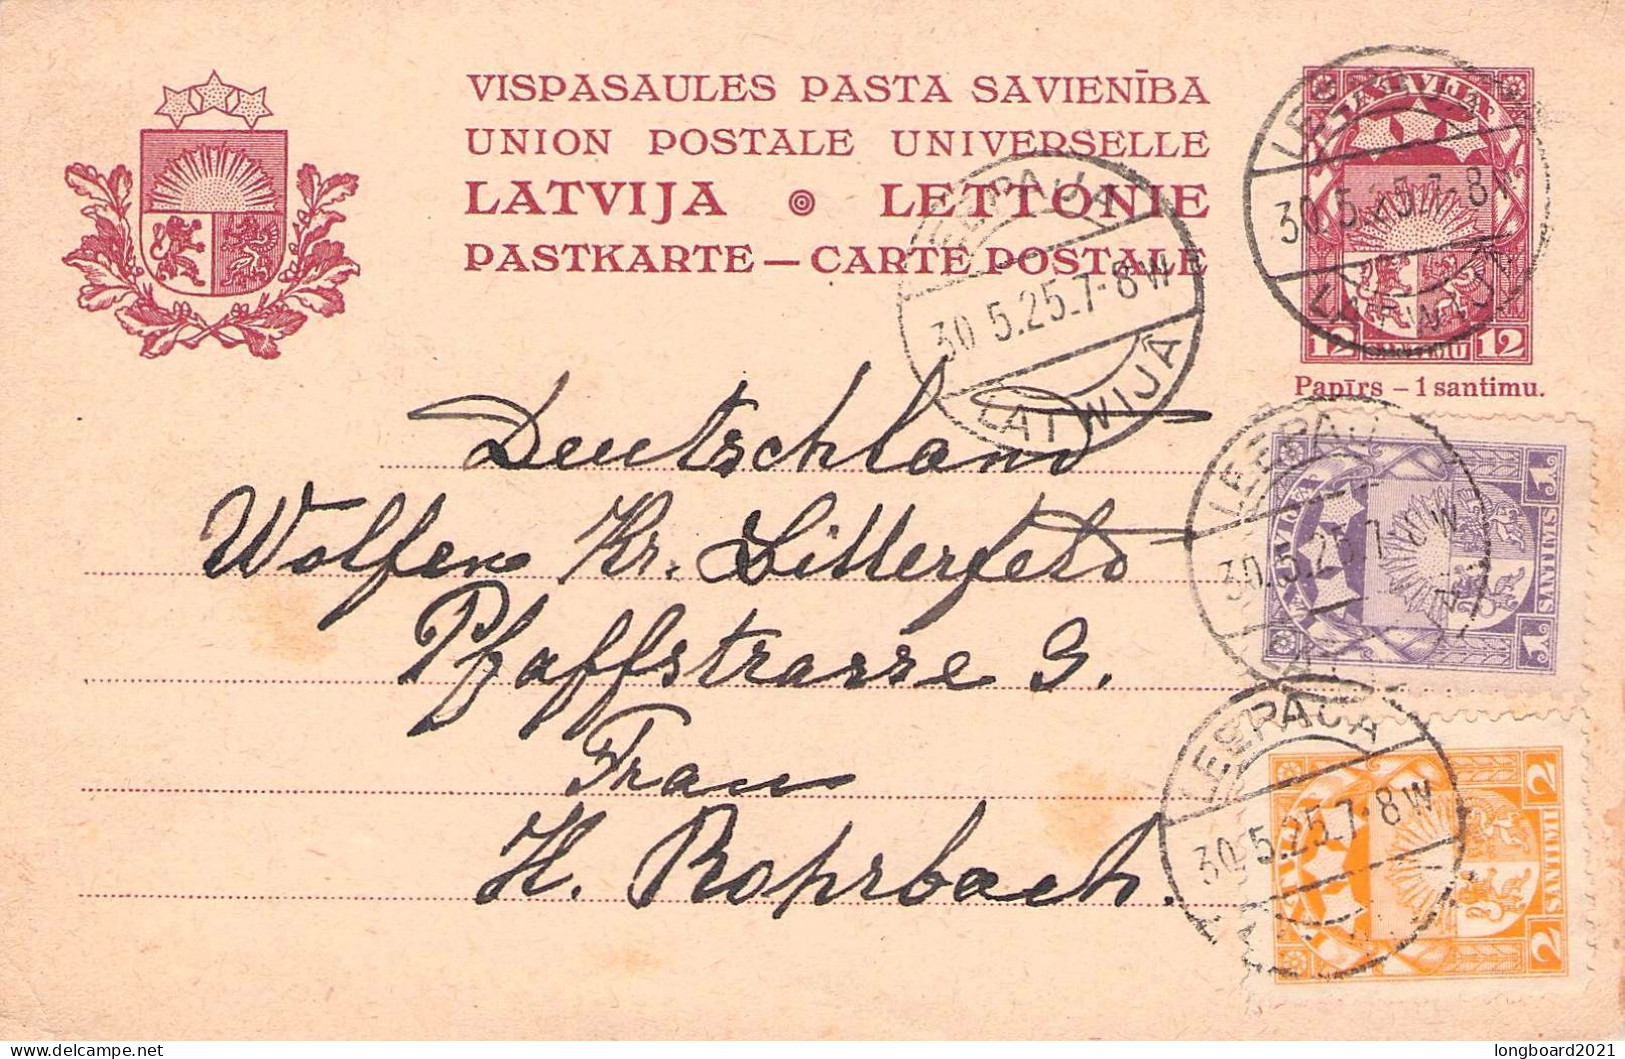 LATVIA - CARTE POSTALE Uprated 1925 LIEPAJA - Krs BITTERFELD Mi P2 / 1298 - Latvia